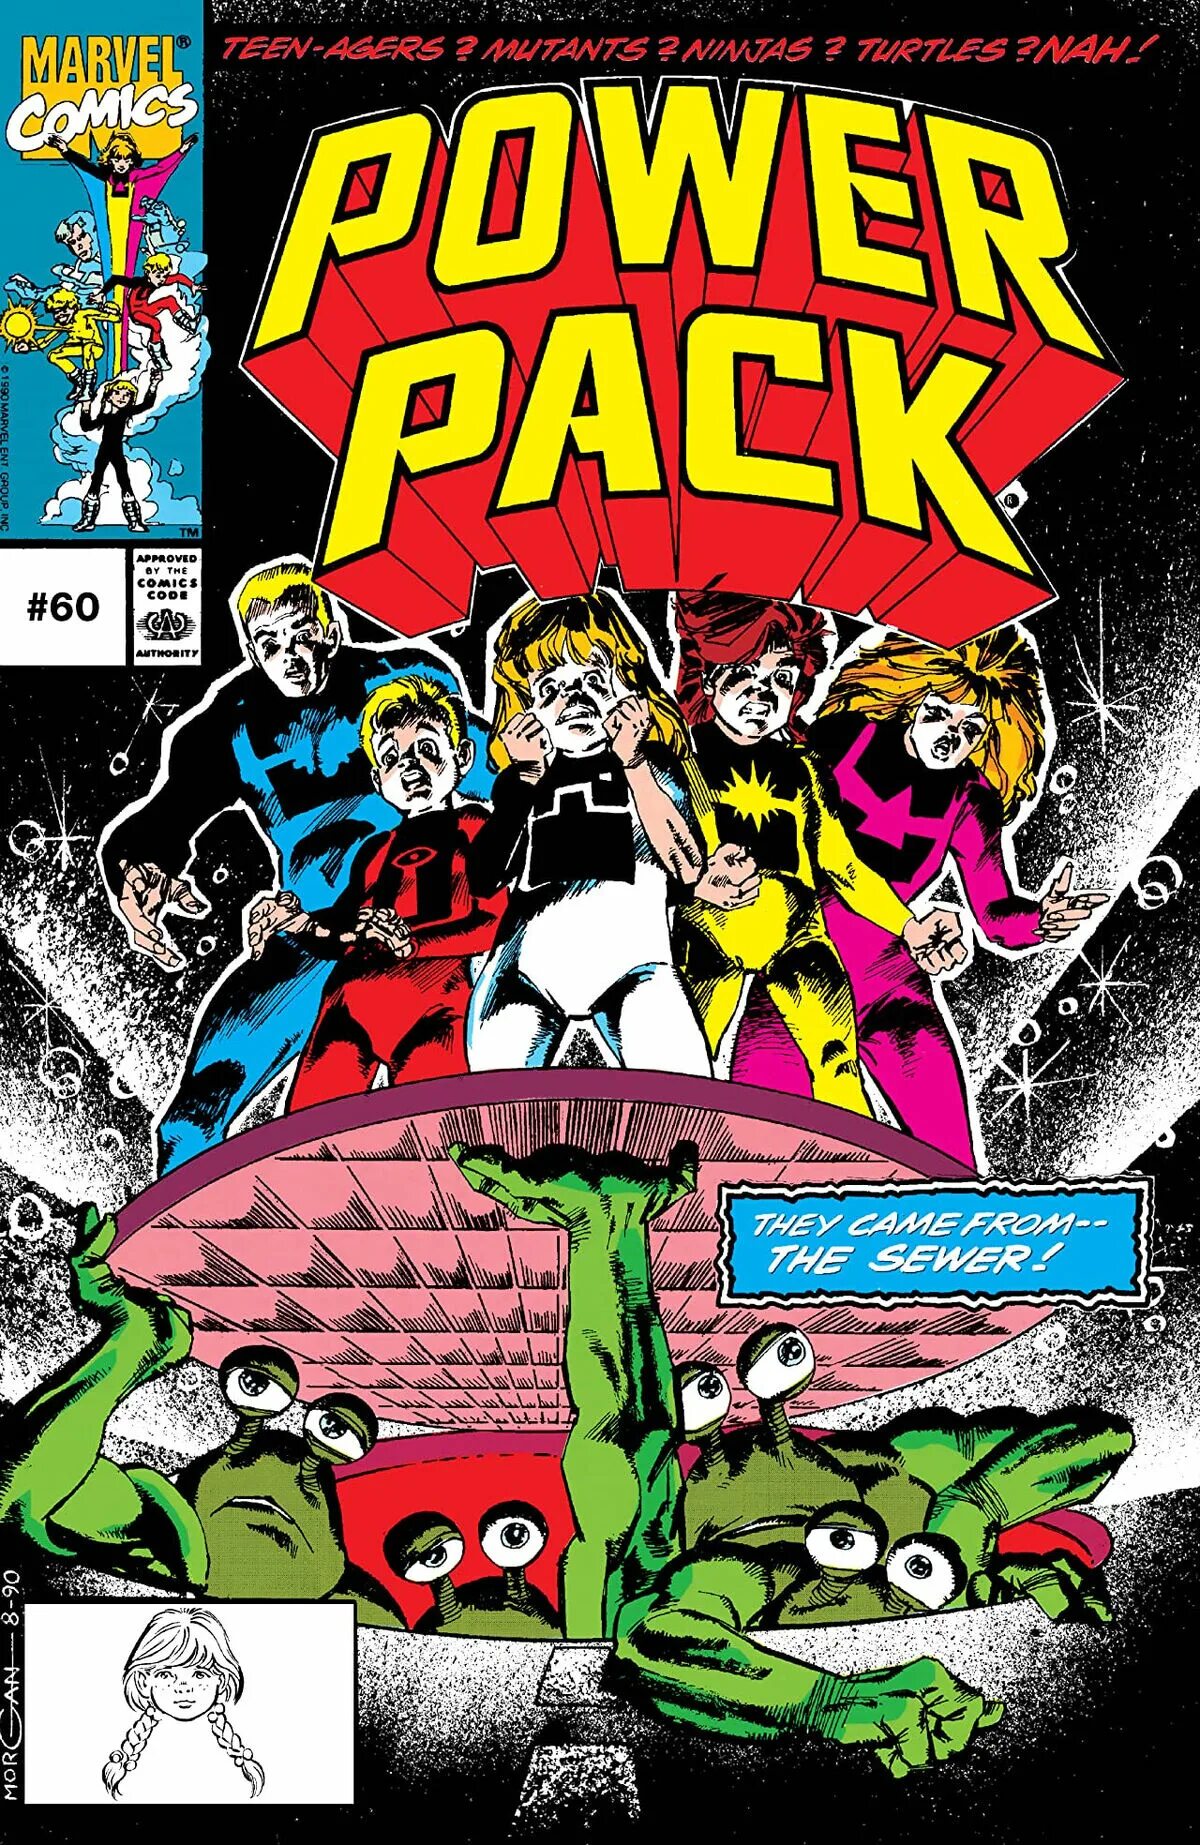 Power Pack Marvel. POWERPACK комиксы. Power Pack Marvel Comics. Power packing комиксы